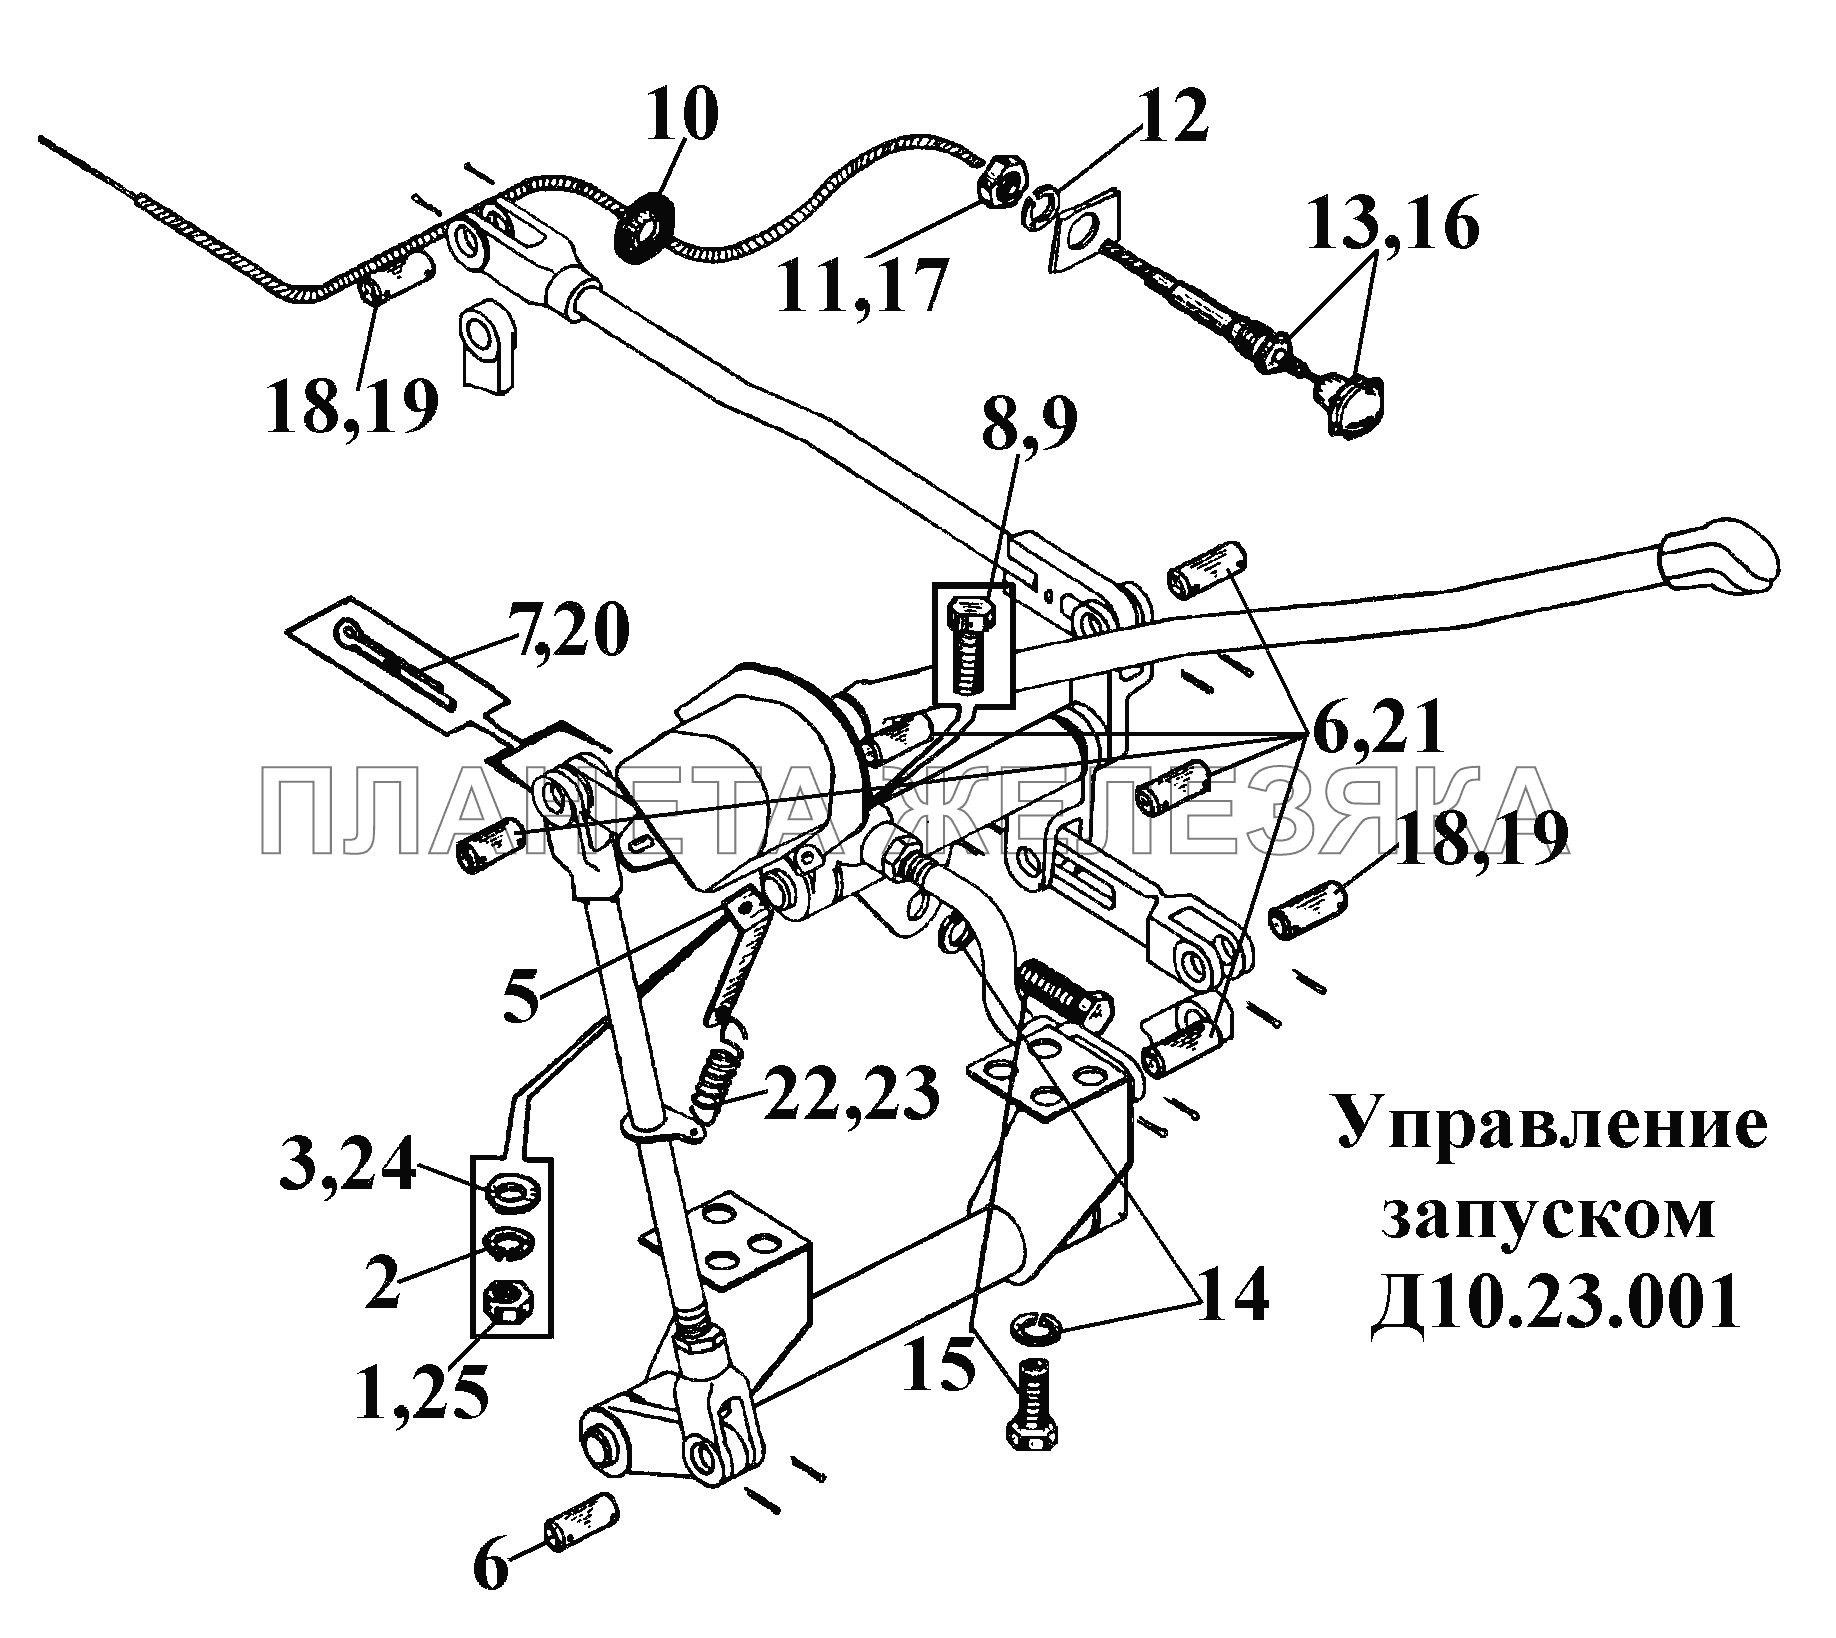 Управление запуском Д10.23.001 (1) ВТ-100Д